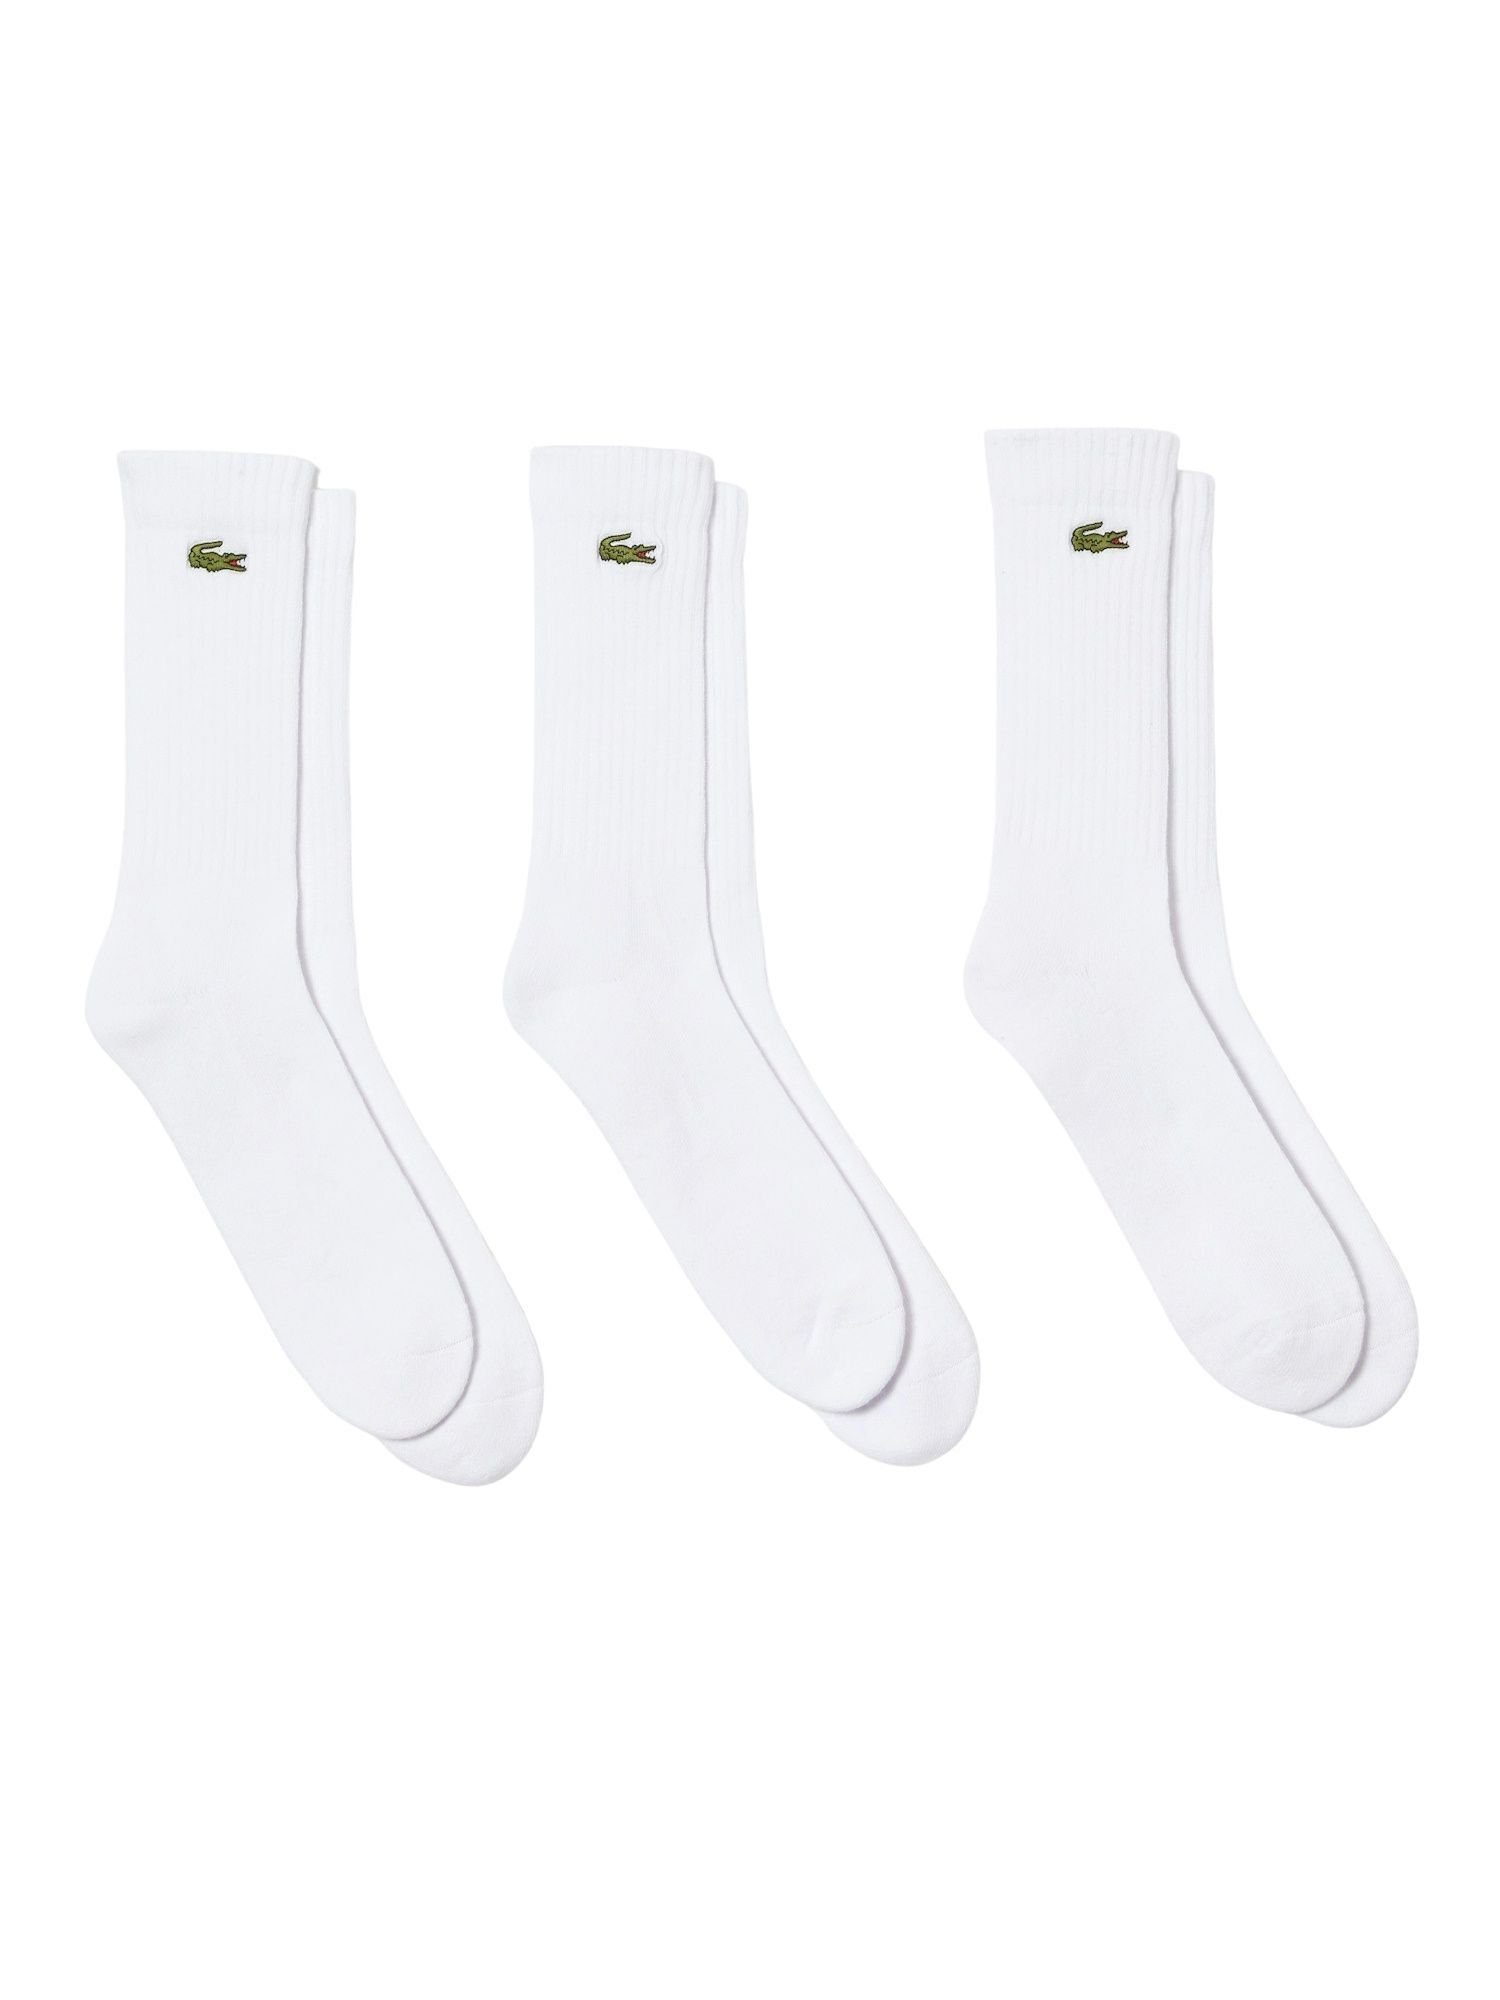 Lacoste Socken Socken Permanent weiß Dreierpack Offer Socken hohe (3-Paar)